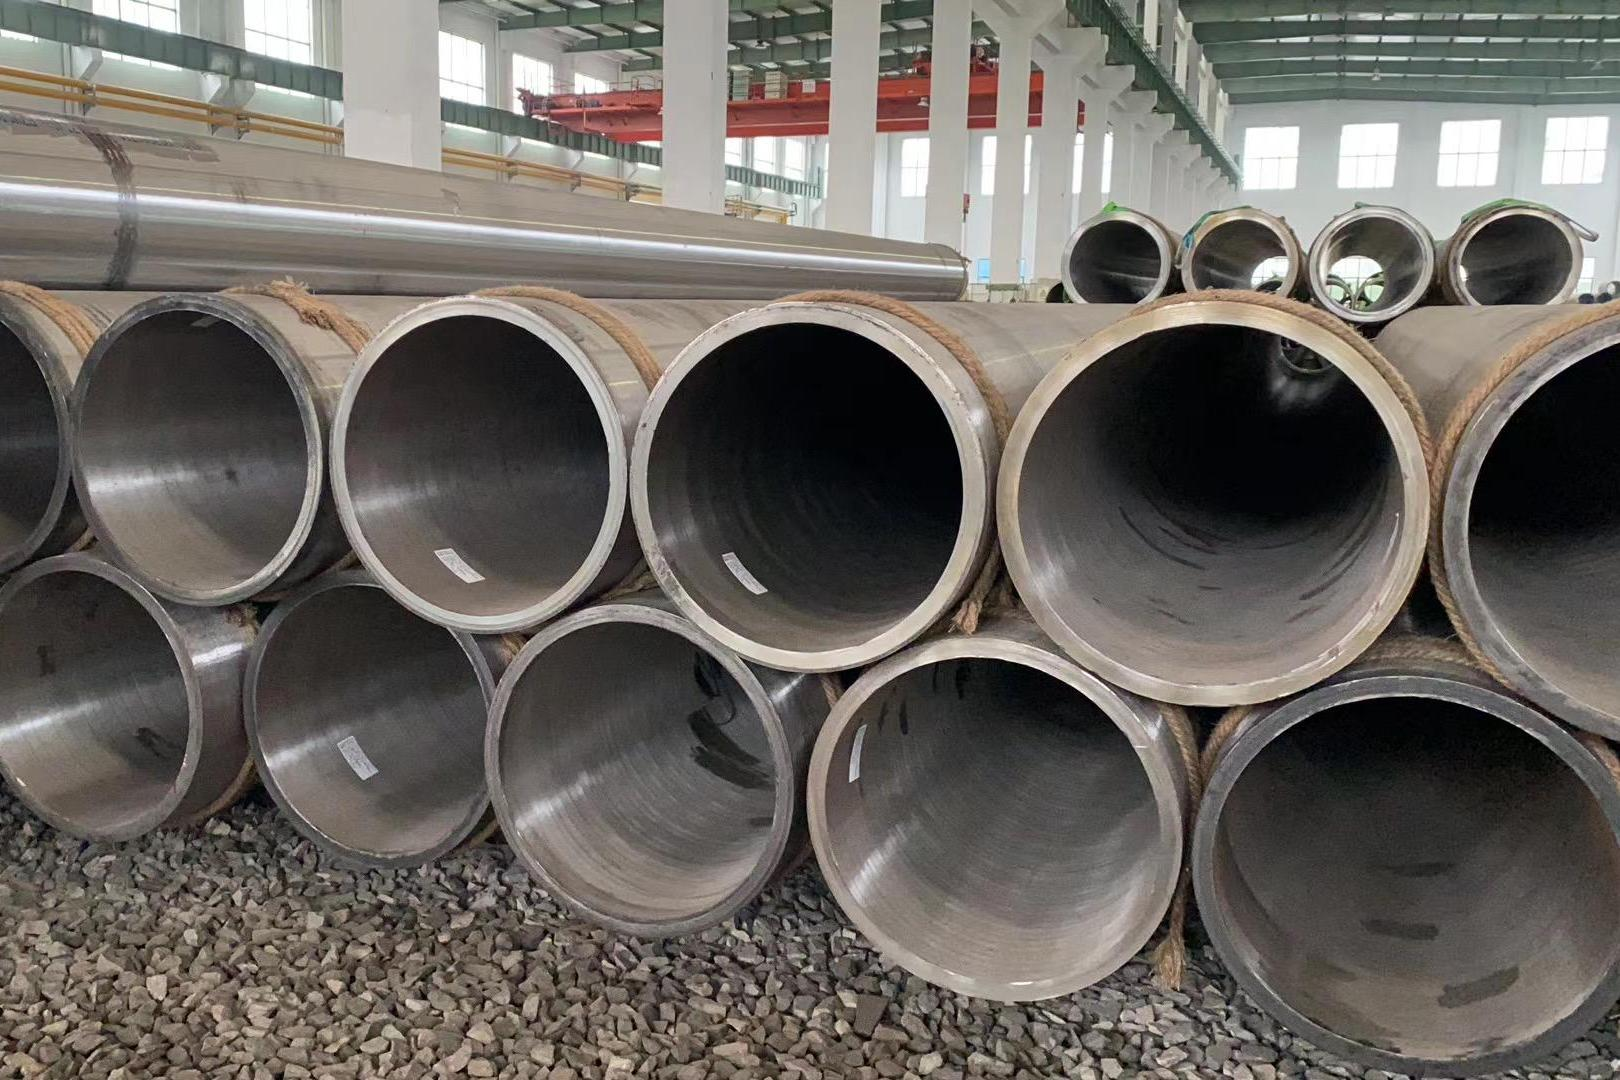 Công ty TNHH ống thép Thiên Tân Sanon sẽ chỉ sản xuất các sản phẩm chính trong năm nay.